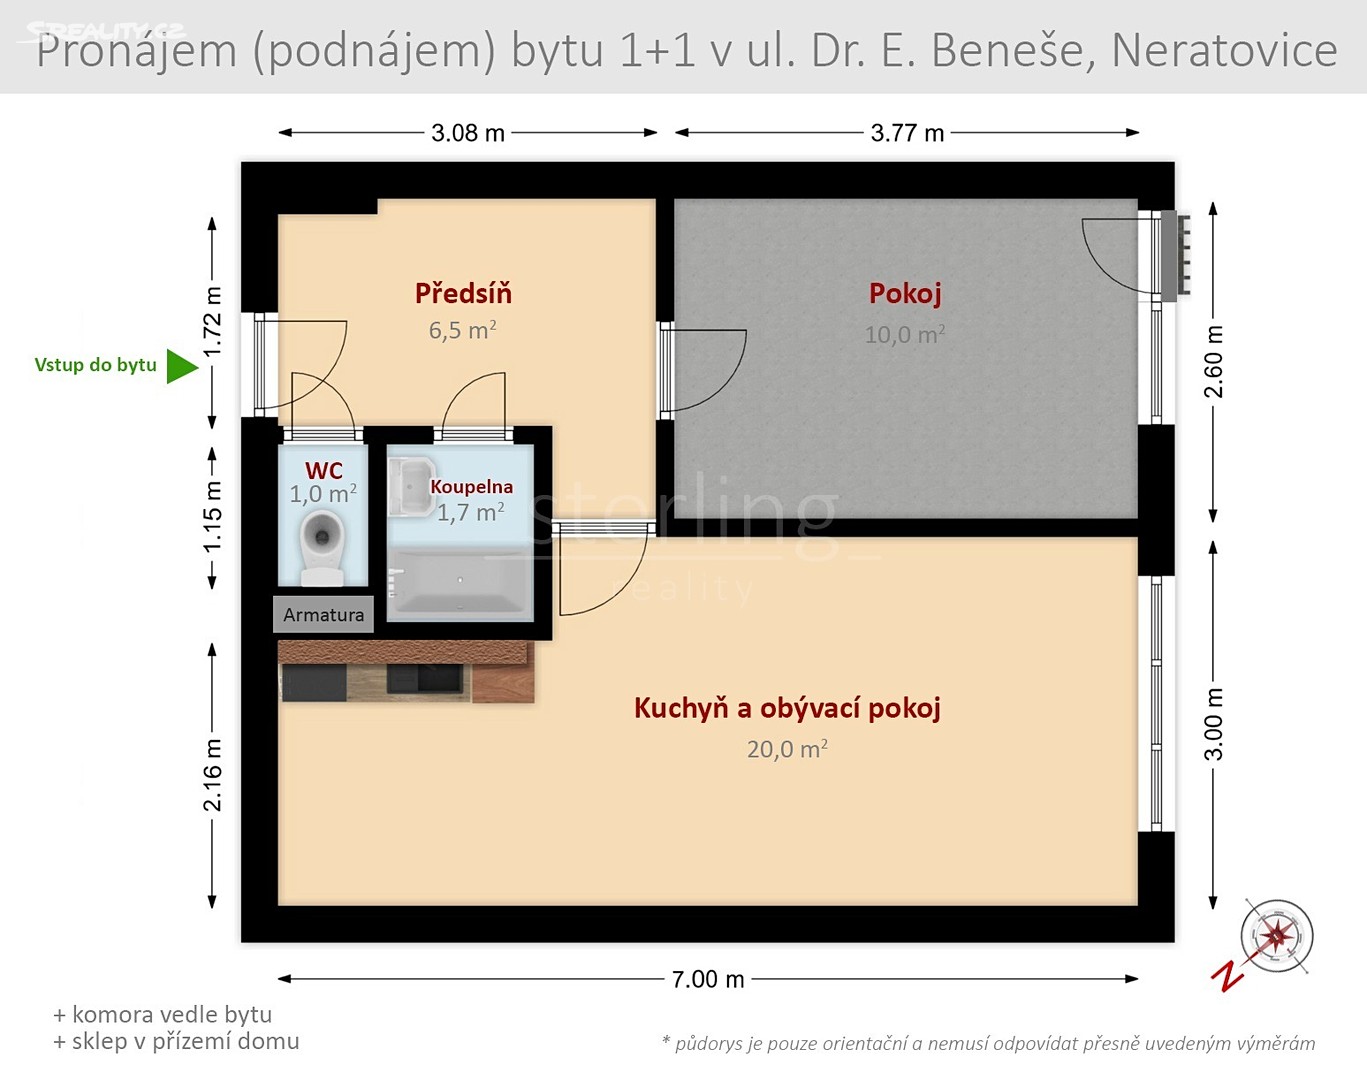 Pronájem bytu 1+1 40 m², Dr. E. Beneše, Neratovice